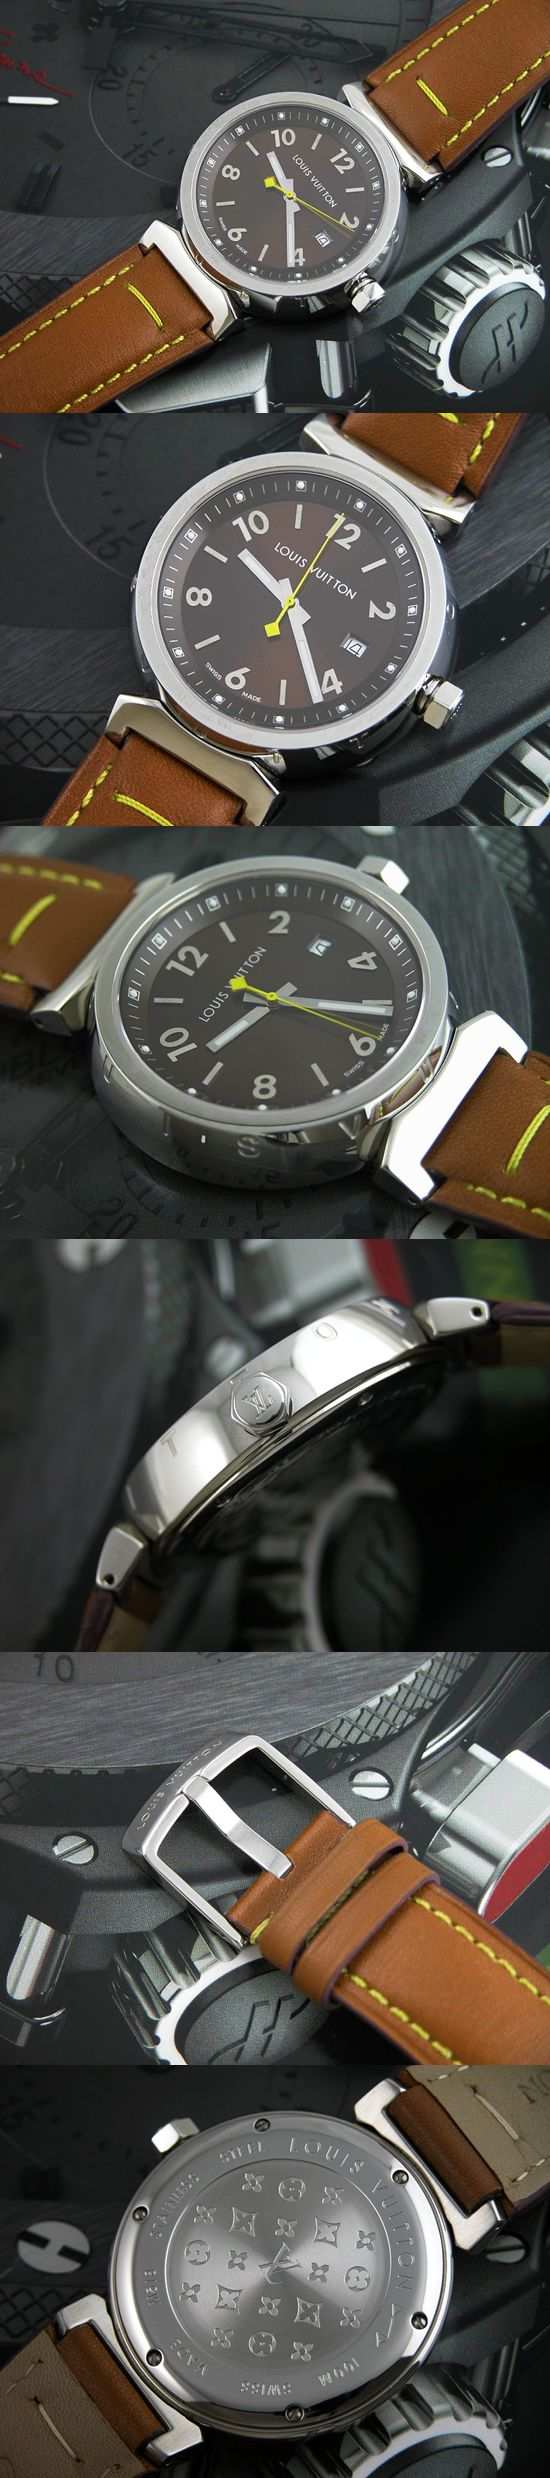 おしゃれなブランド時計がルイ ヴィトン-タンブール-LOUIS VUITTON-LV00031J-男性用/女性用を提供します.